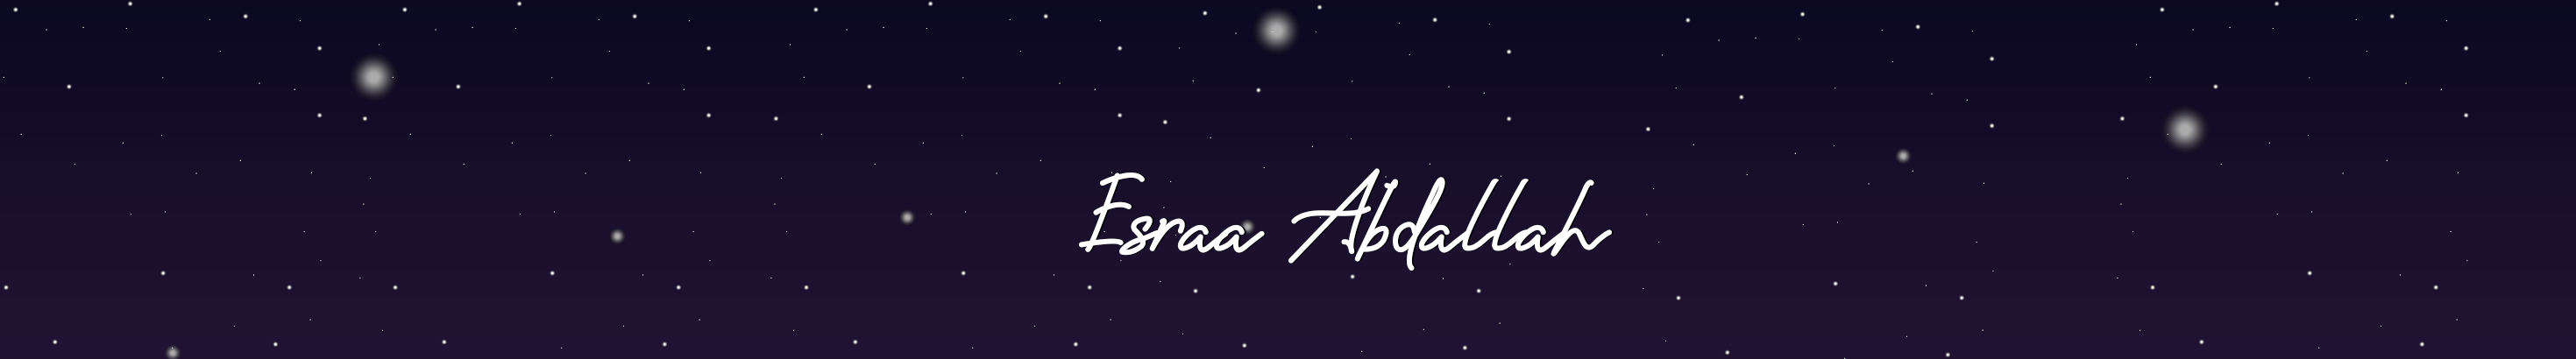 Banner del profilo di Esraa abdallah